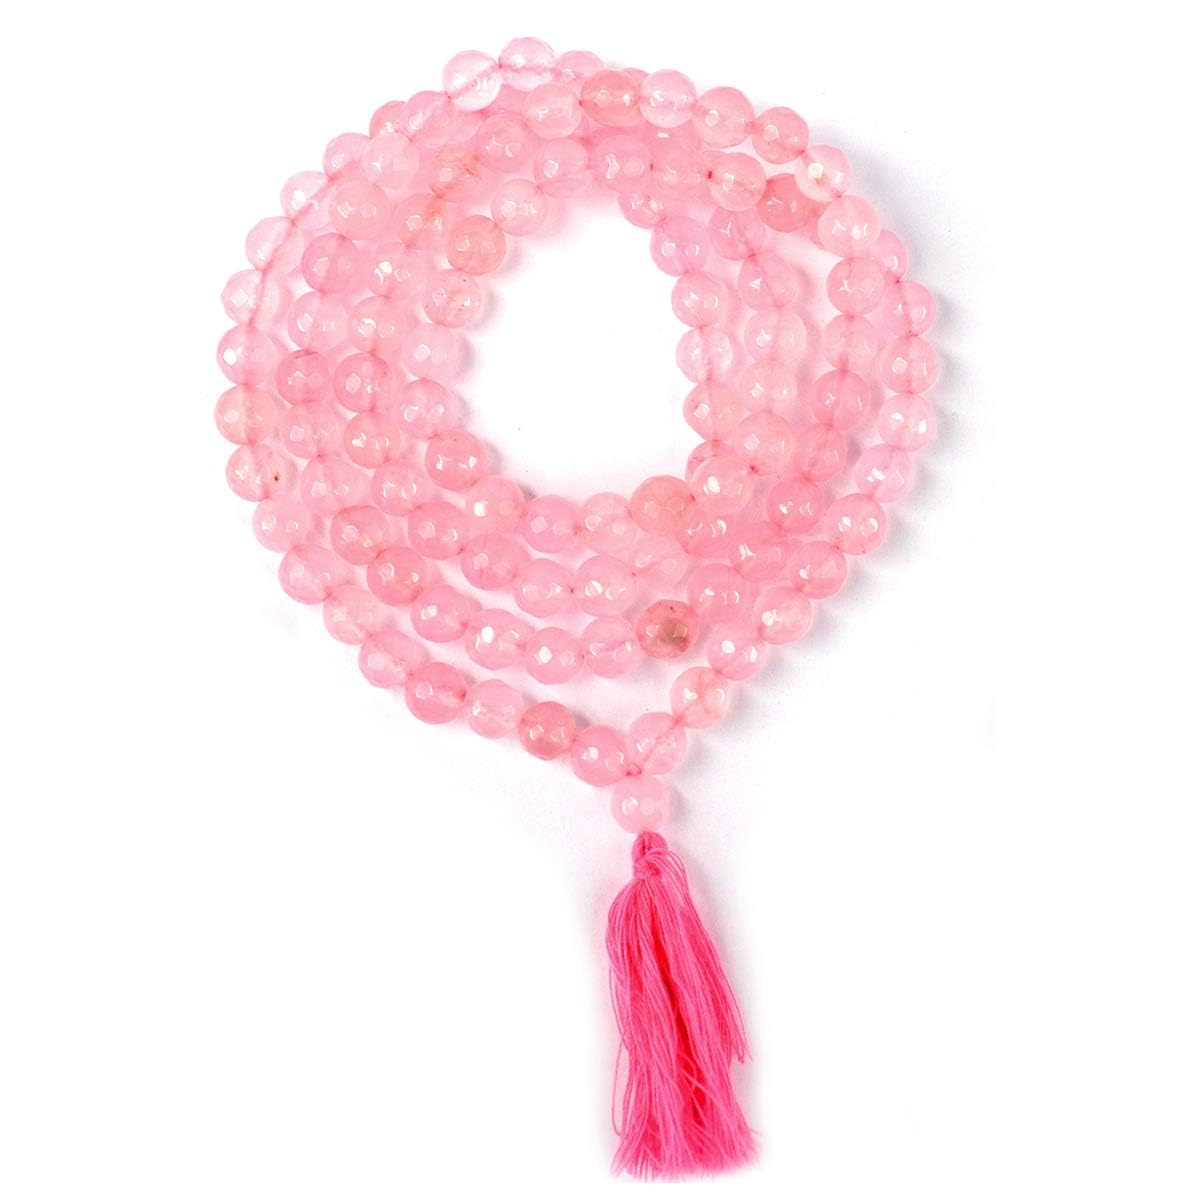 Pujahome Pink Hakik Mala/Pink Agate Mala (Size: 7mm, Beads: 108+1)